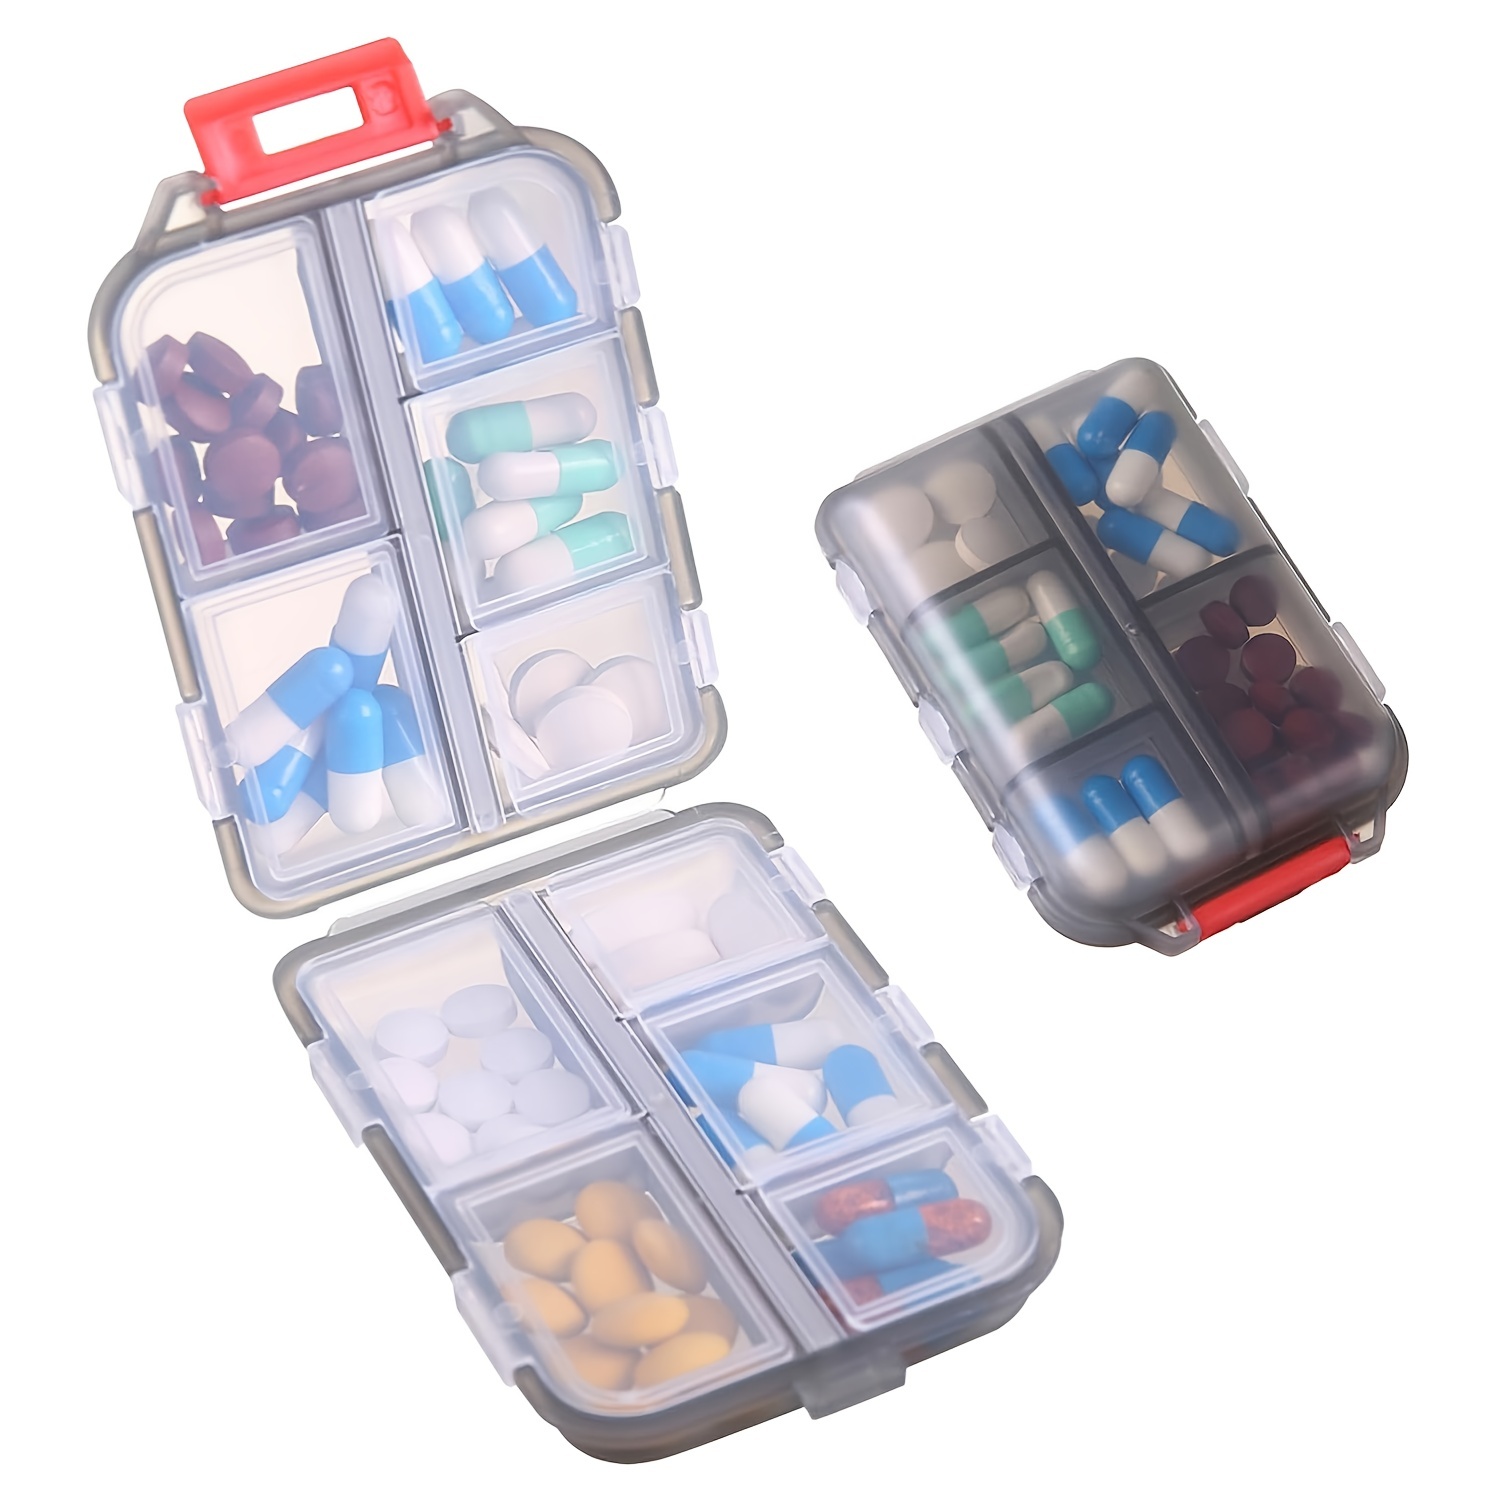 Mini Travel Pill Organizer Box